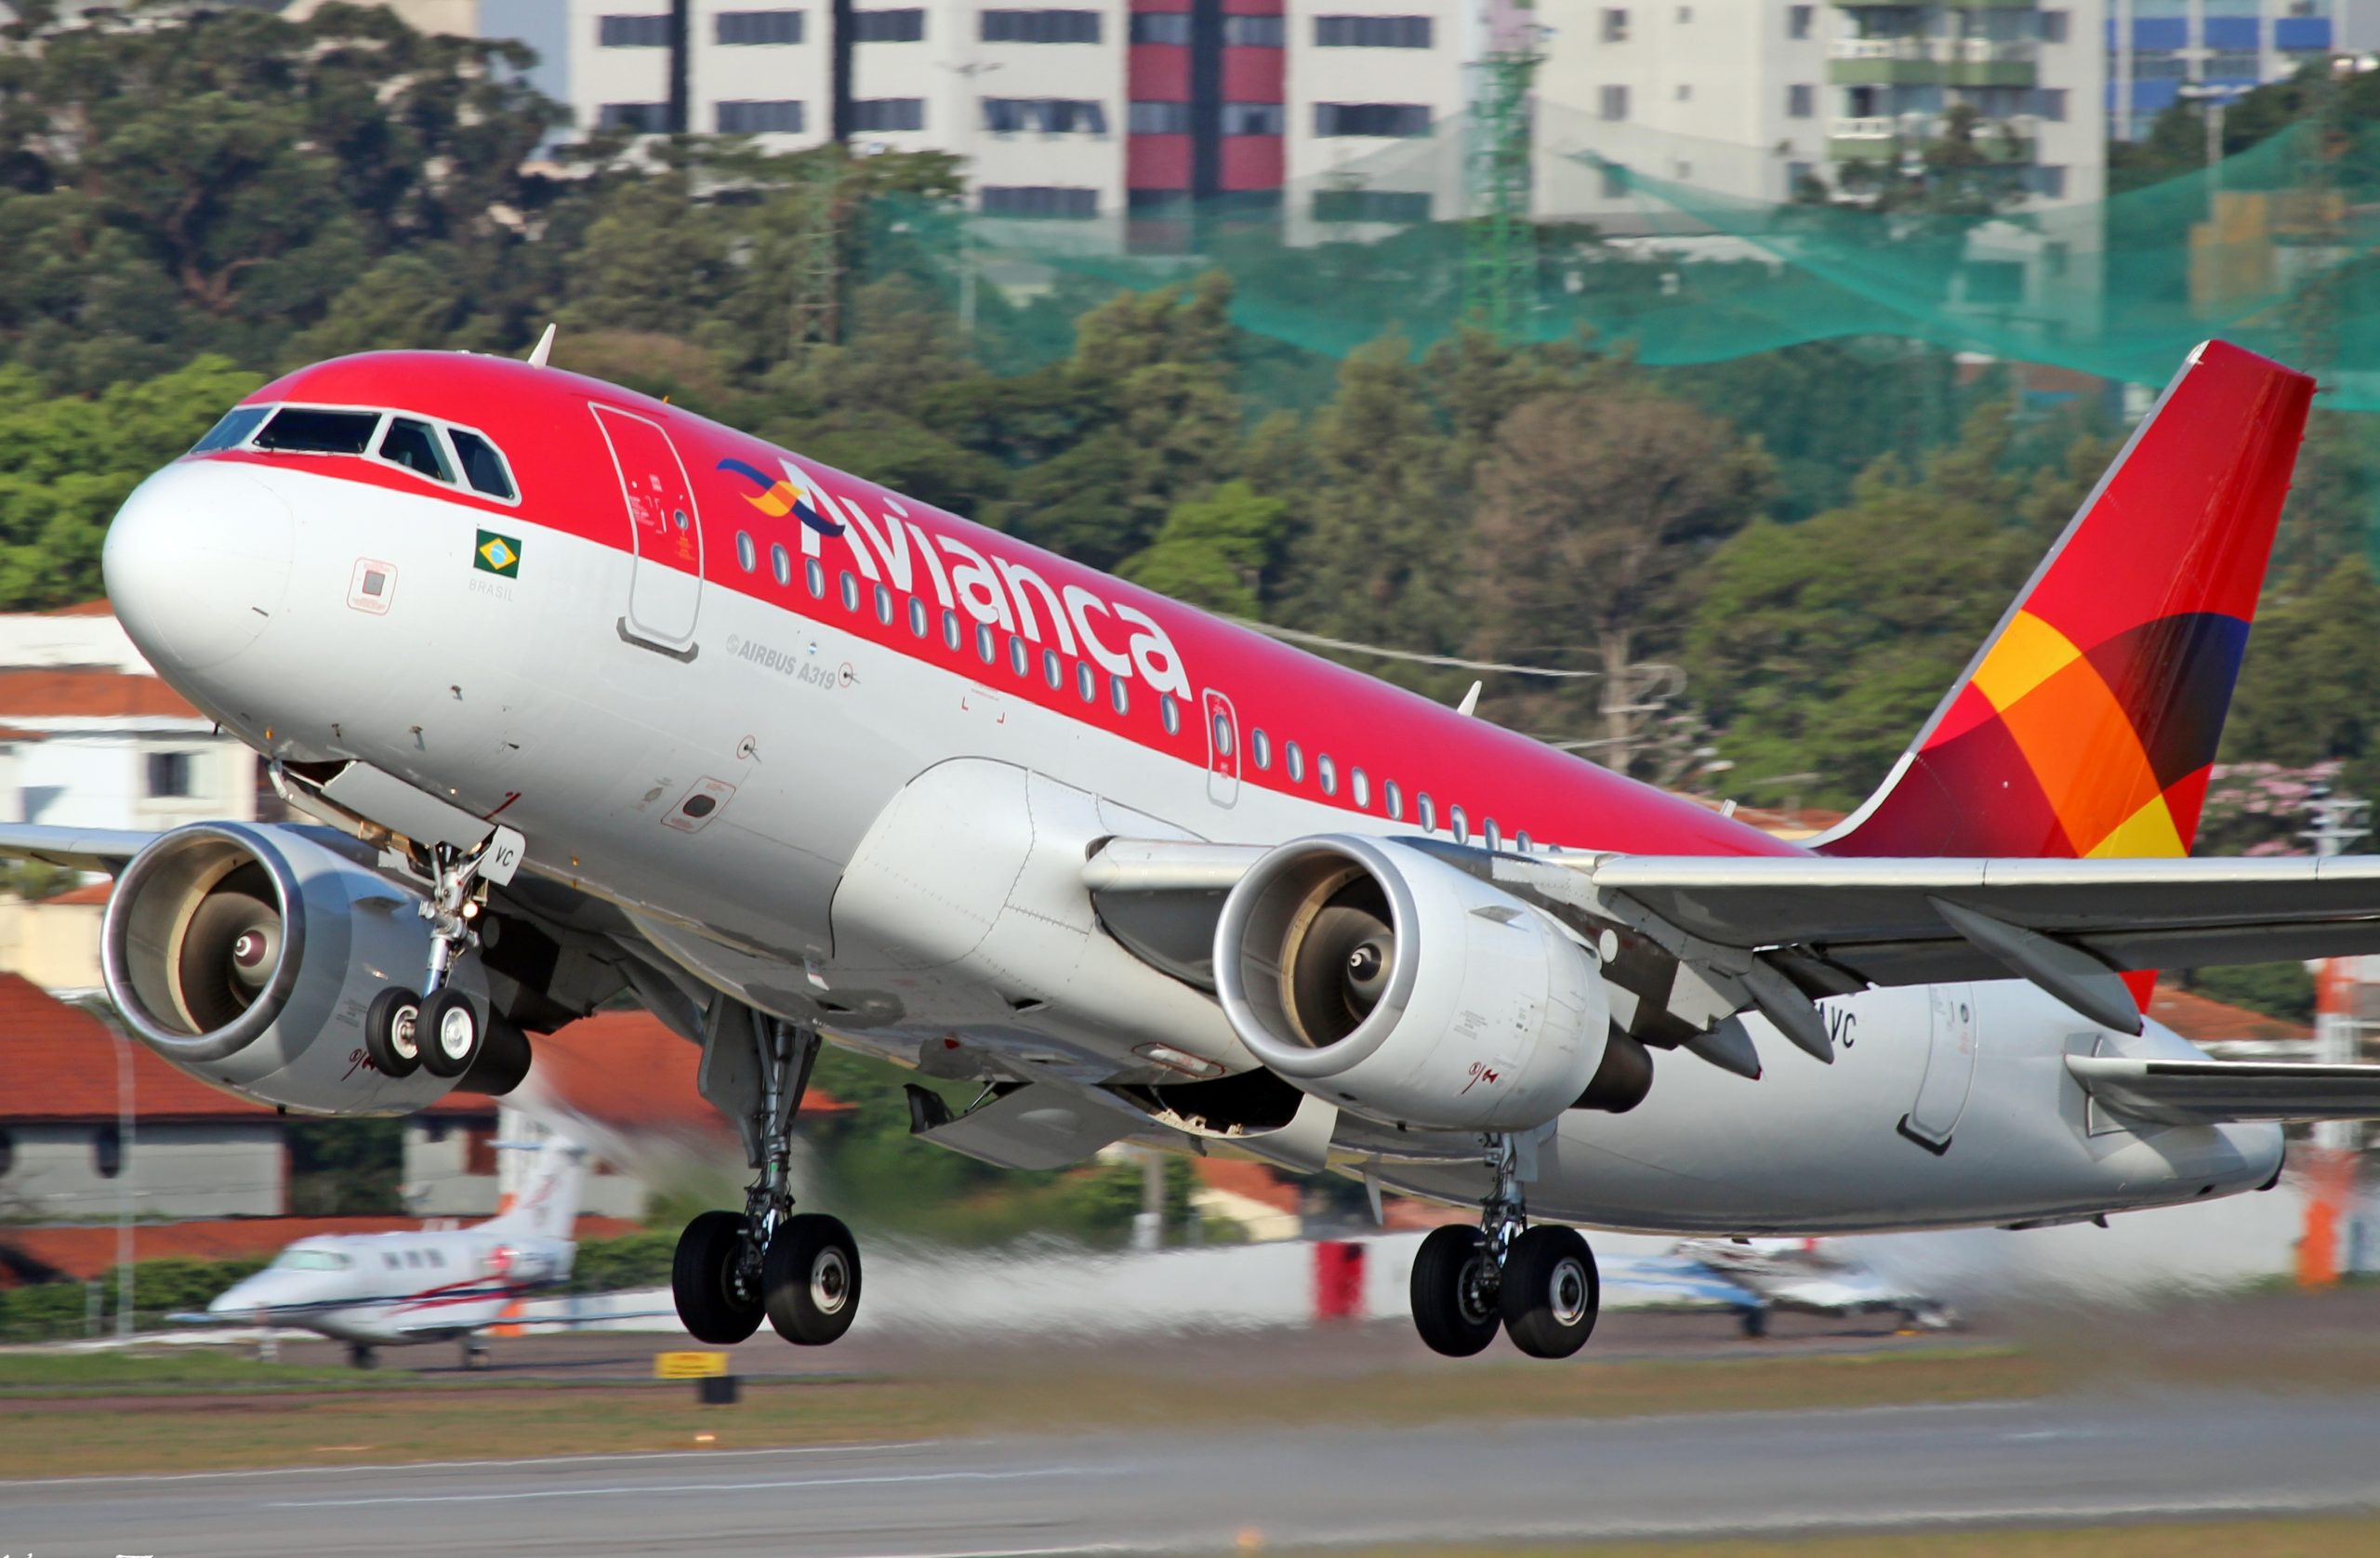 La aerolínea Avianca Holdings se declaró en quiebra ante el impacto del coronavirus